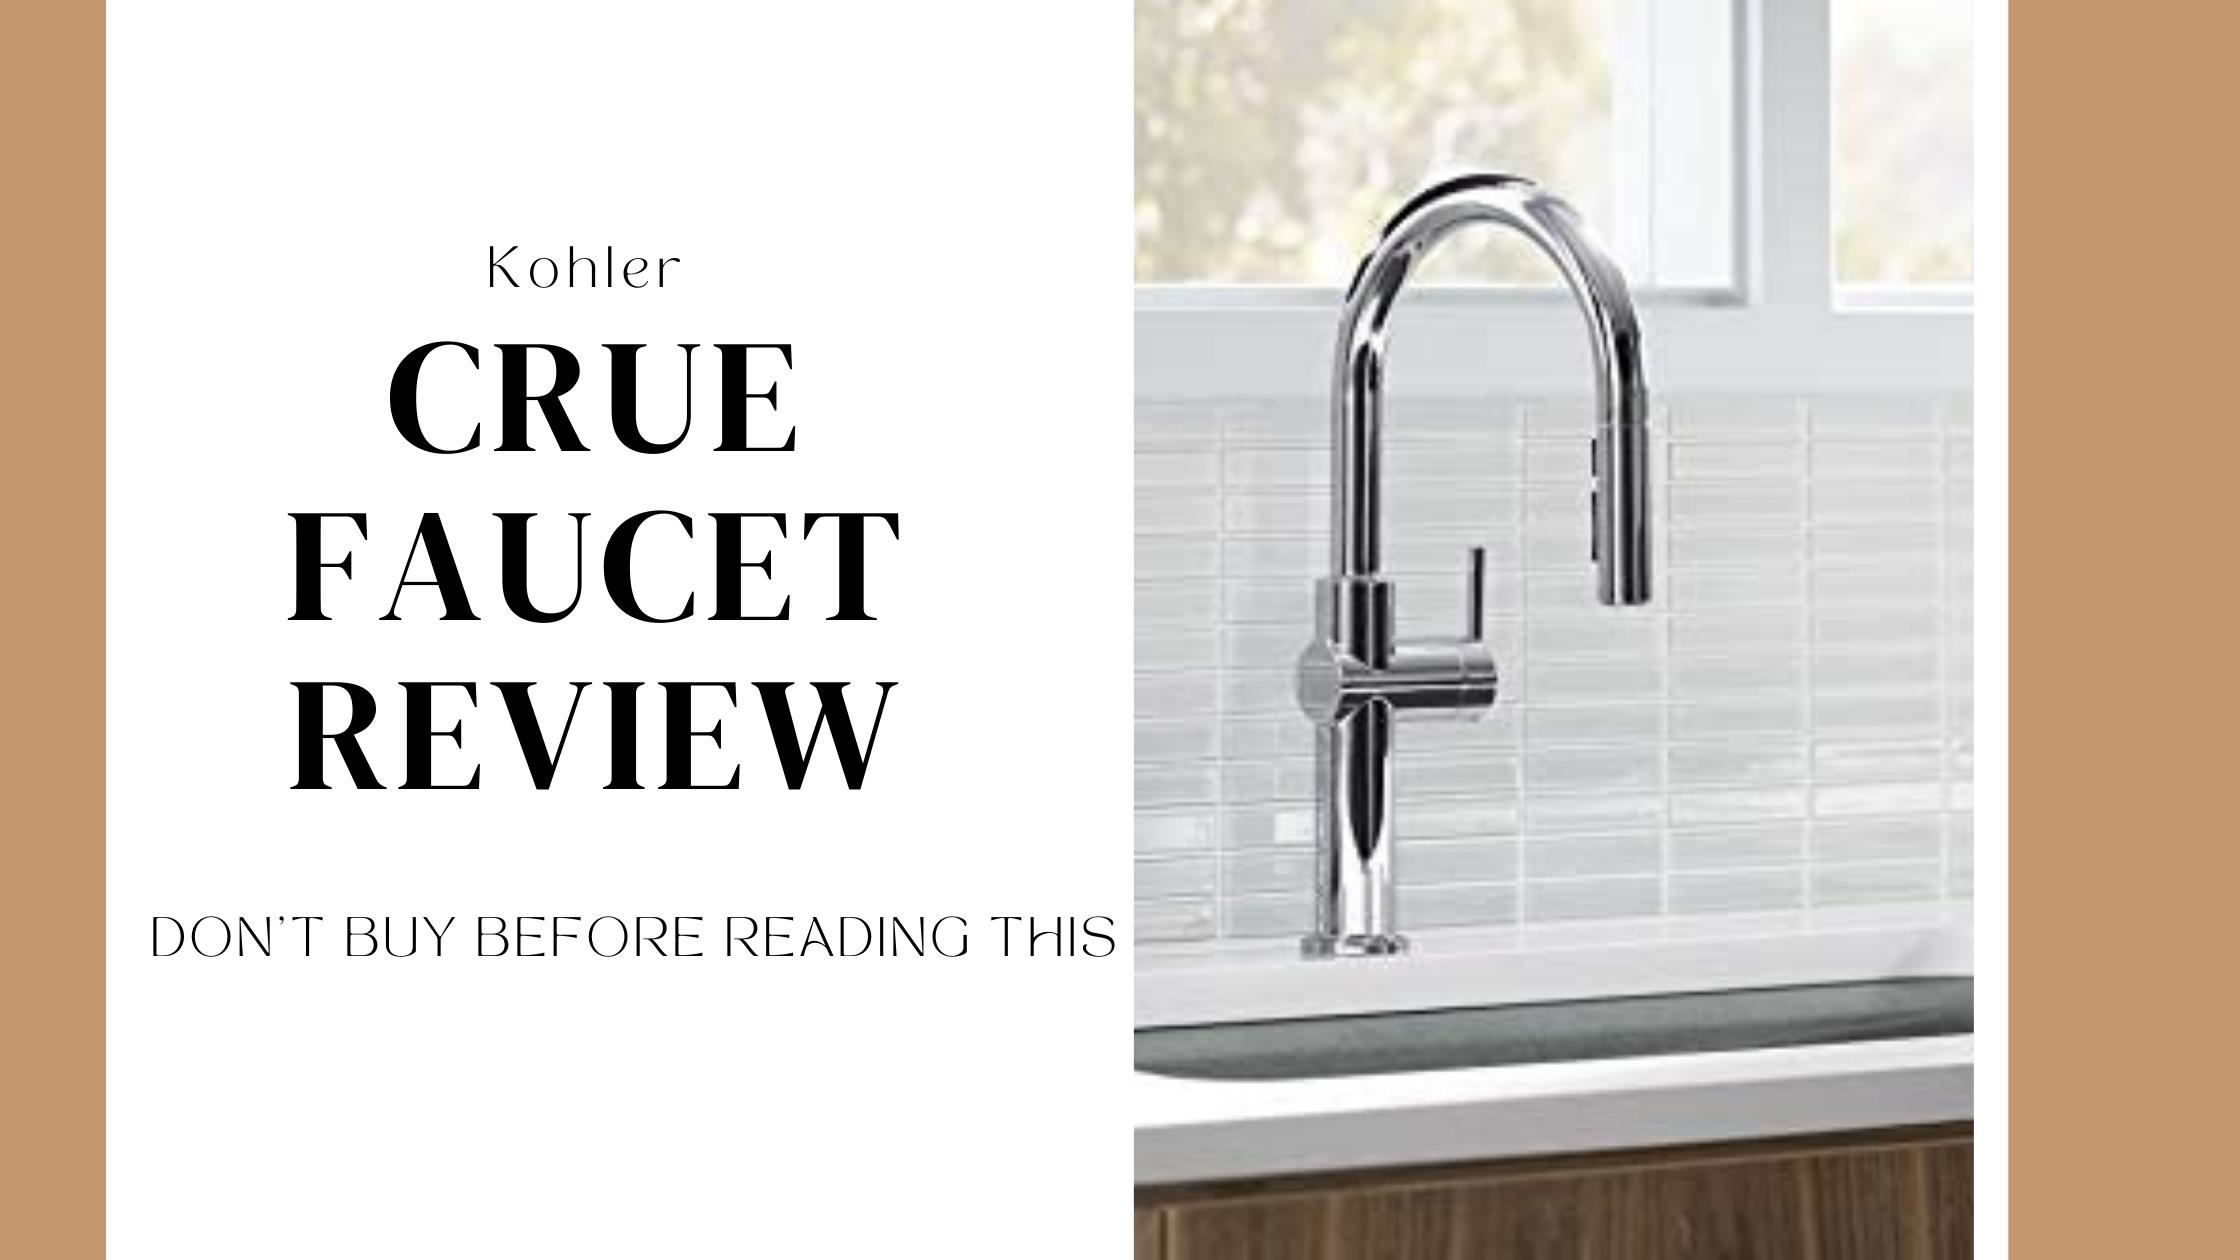 Kohler Crue Faucet Review